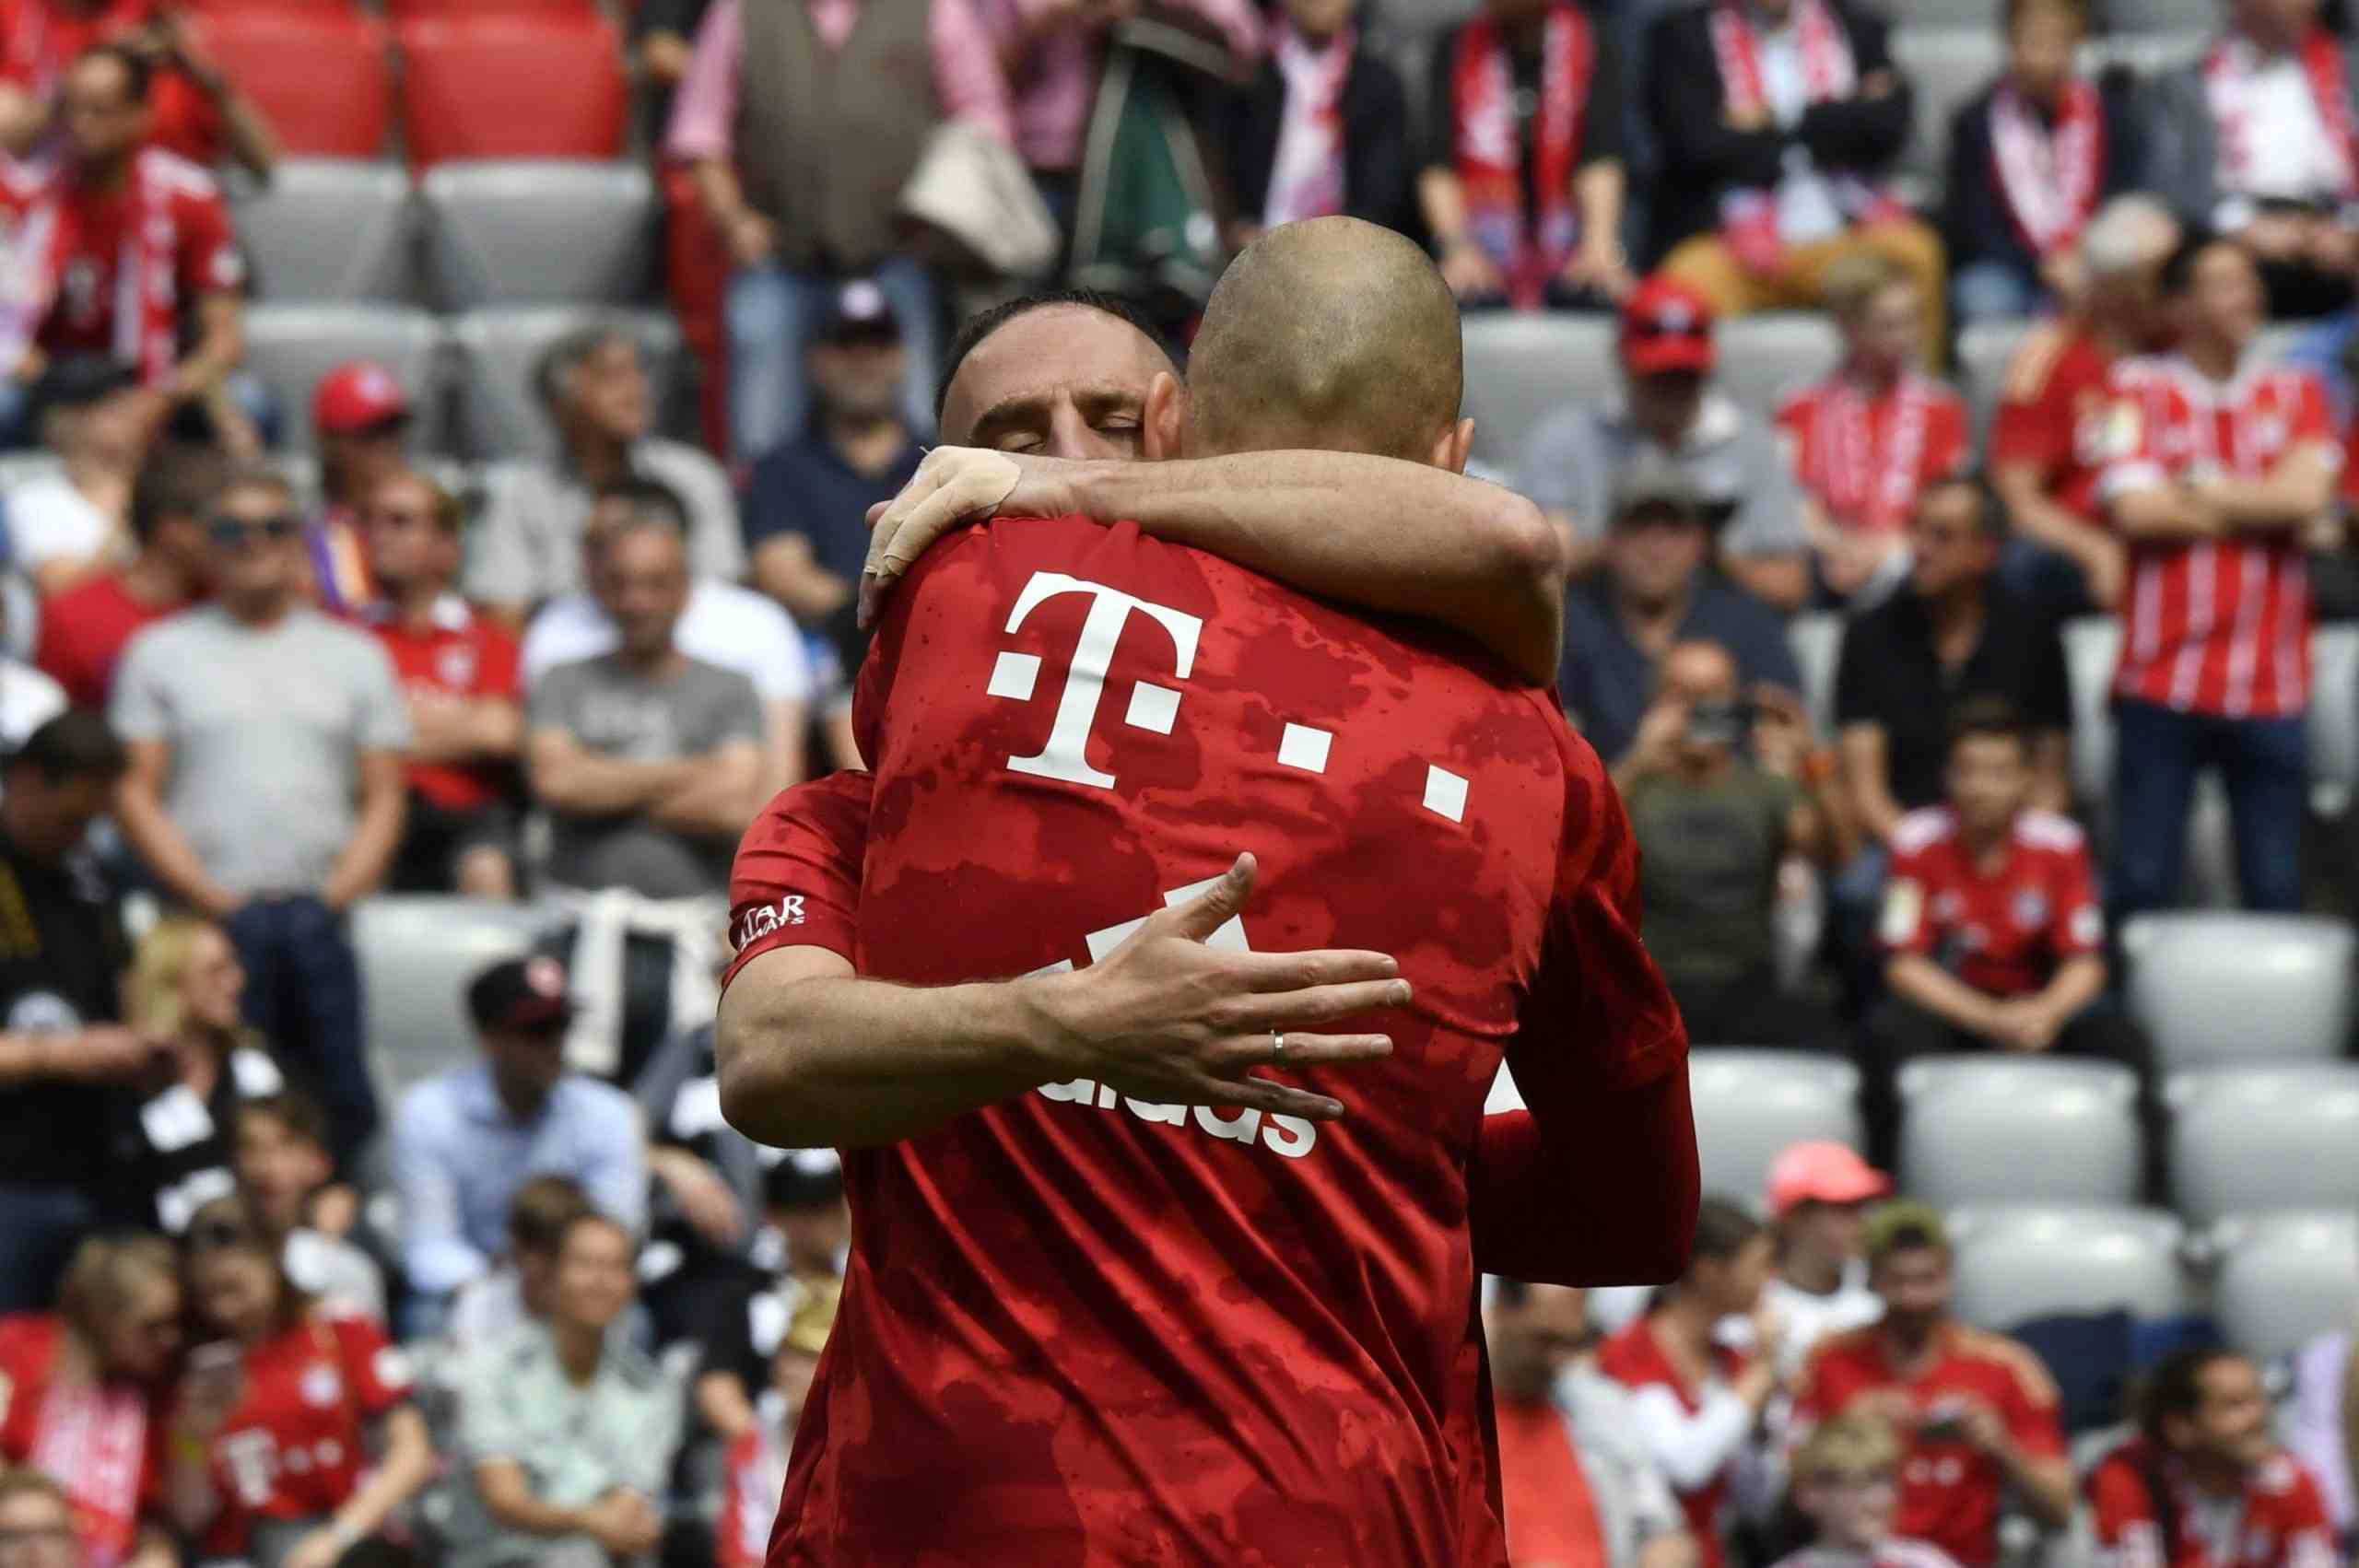 L’ultima fermata tedesca di Robben e Ribery, campioni fragili